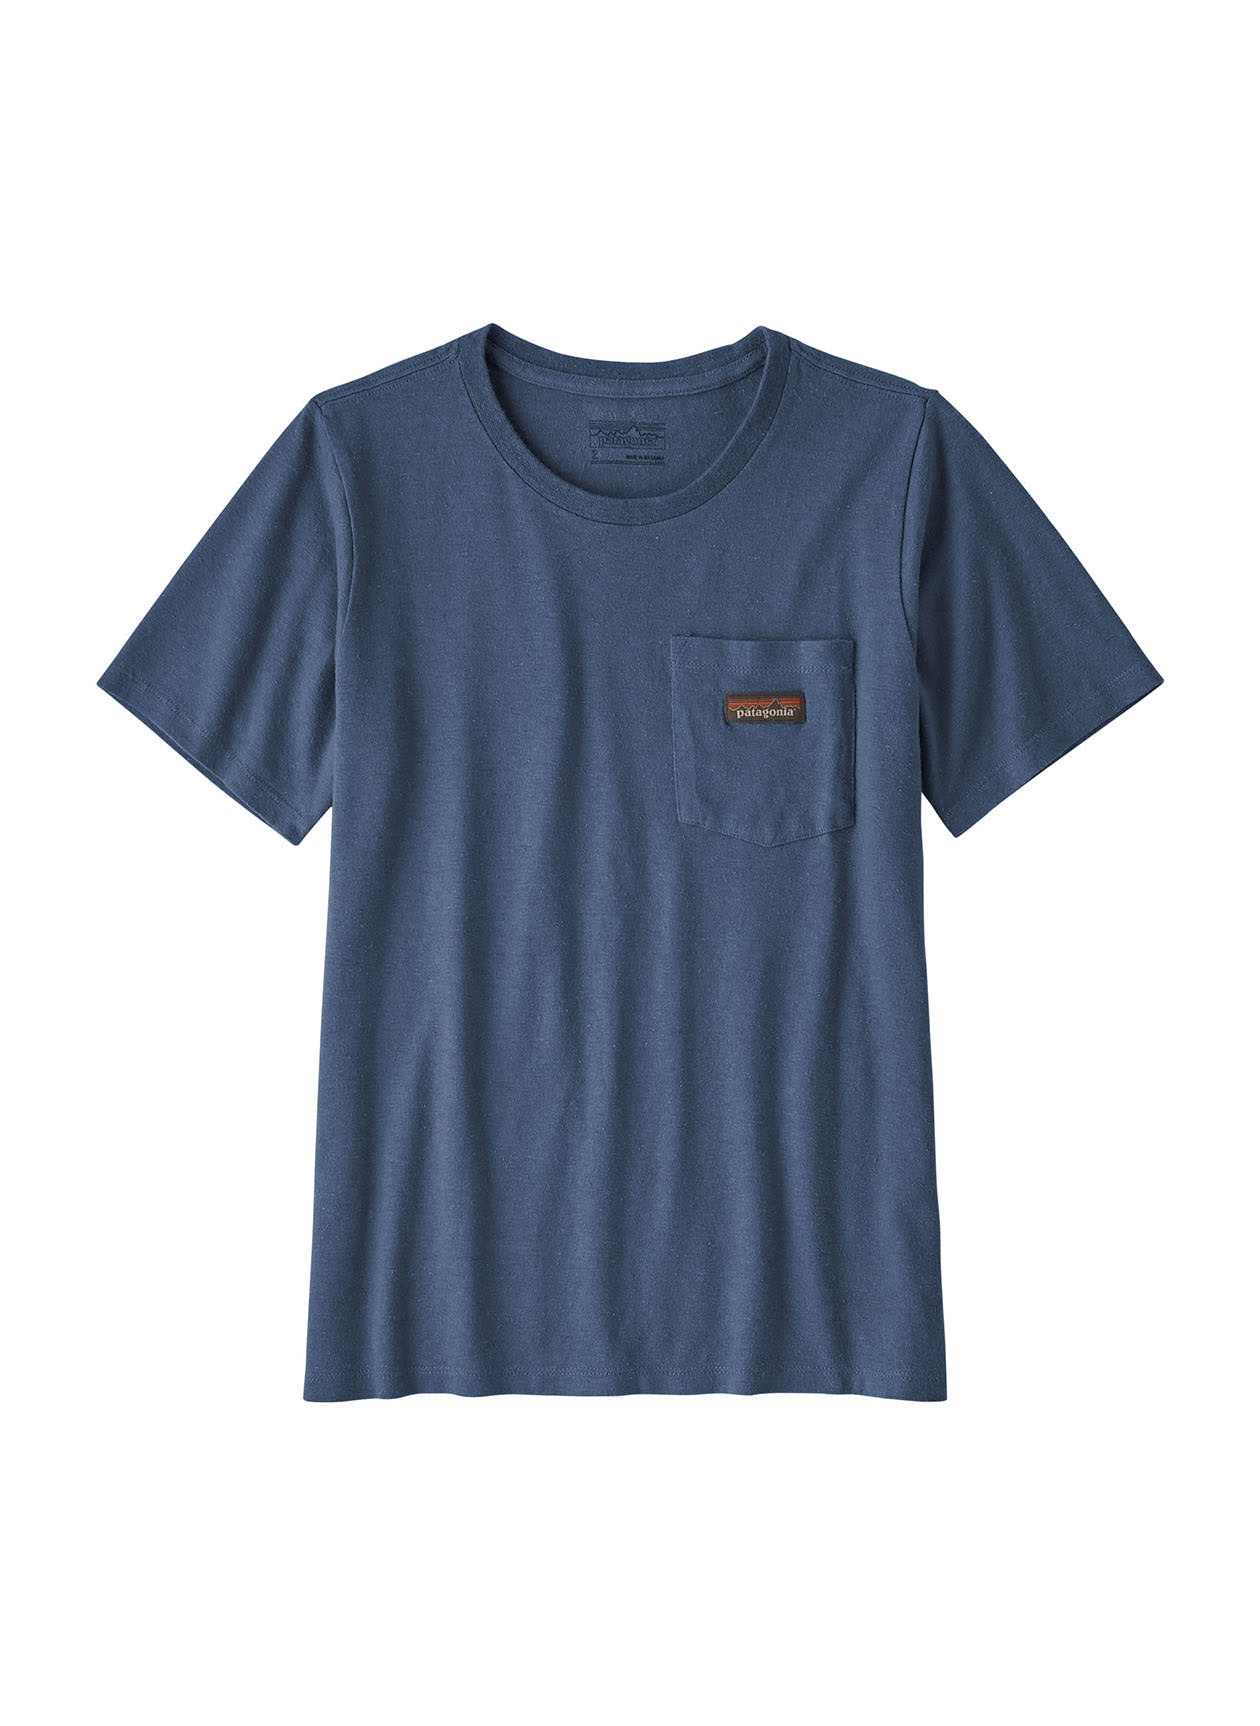 Patagonia Women's Stone Blue Work Pocket T-Shirt